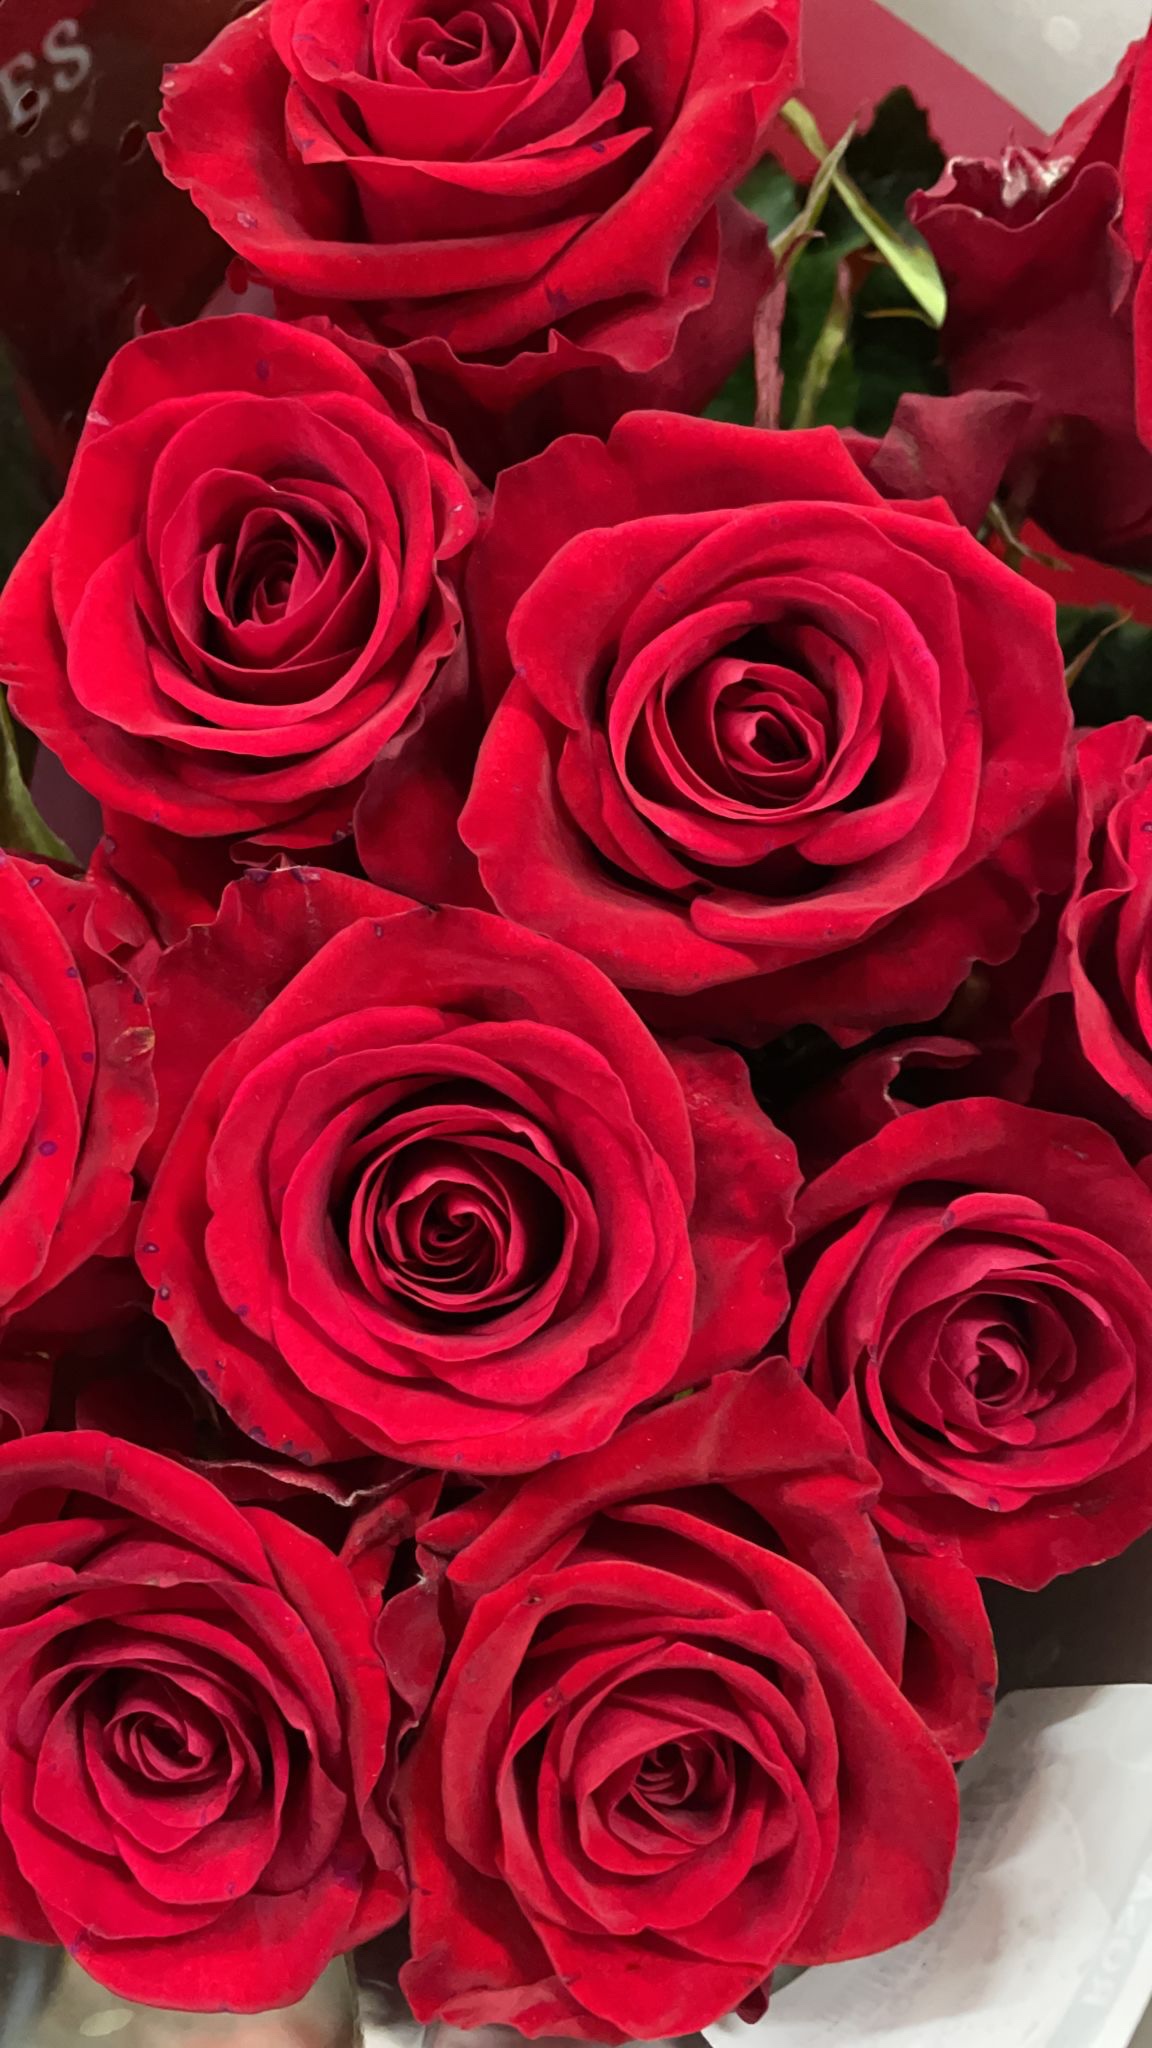 San Valentino – rose e tradizioni